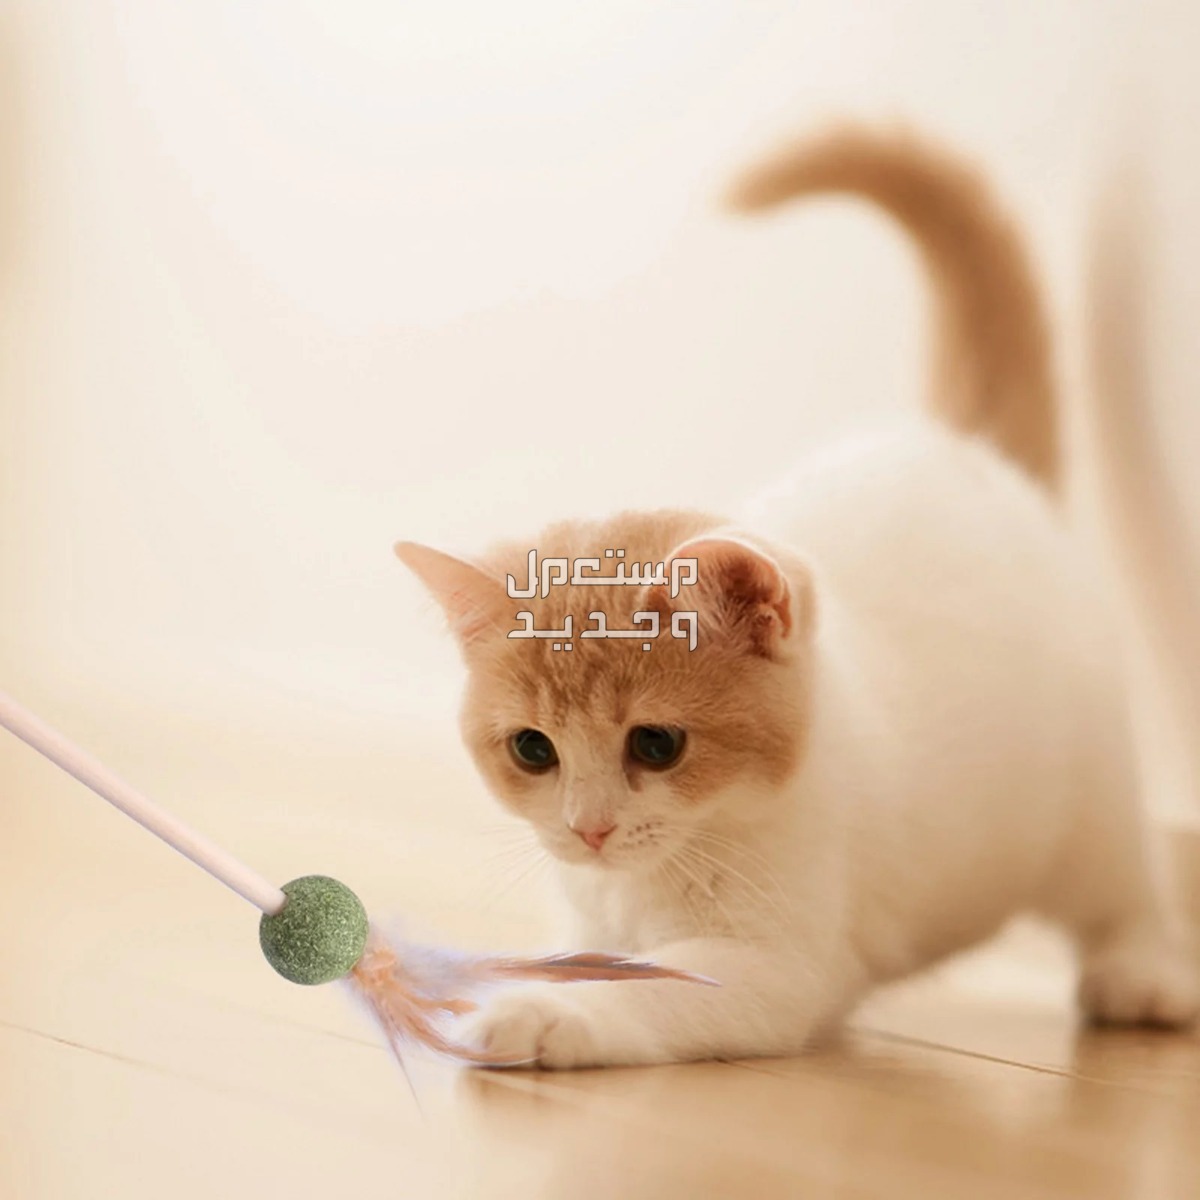 لمحبي القطط - تعرف على أفضل العاب قطط متحركة في تونس قطة تلعب بالريشة